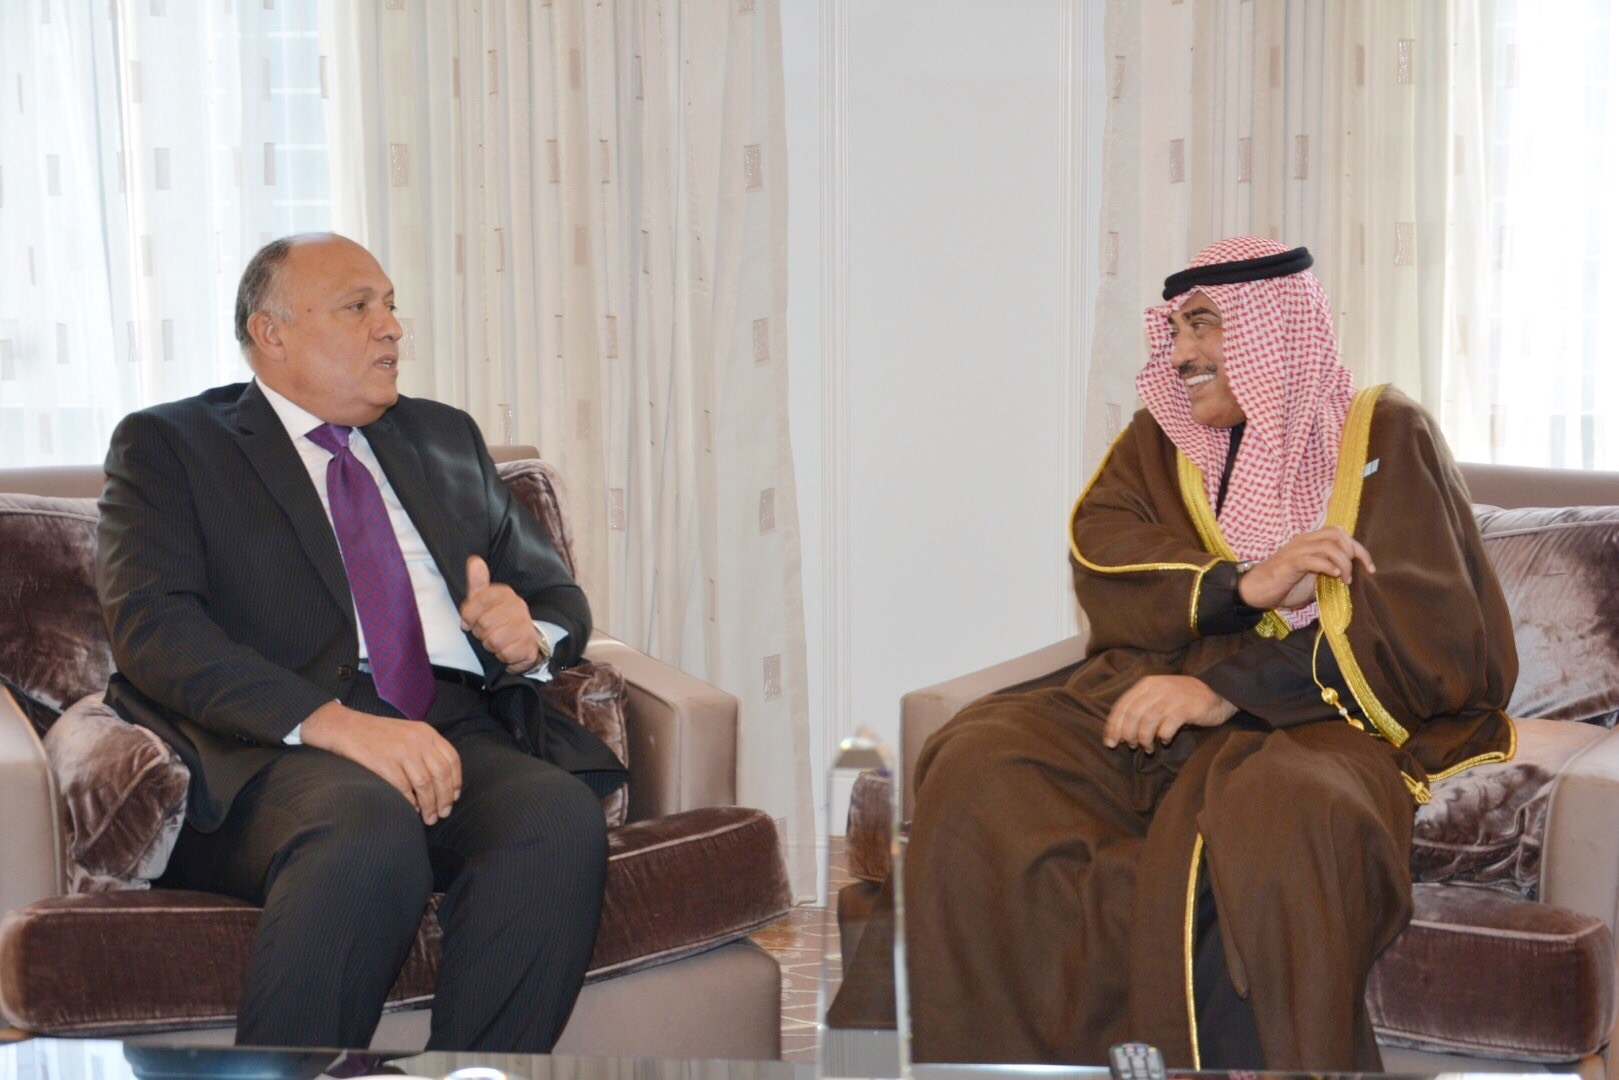 Foreign Minister Sheikh Sabah Al-Khaled Al-Hamad Al-Sabah meets Egyptian Foreign Minister Sameh Shukri